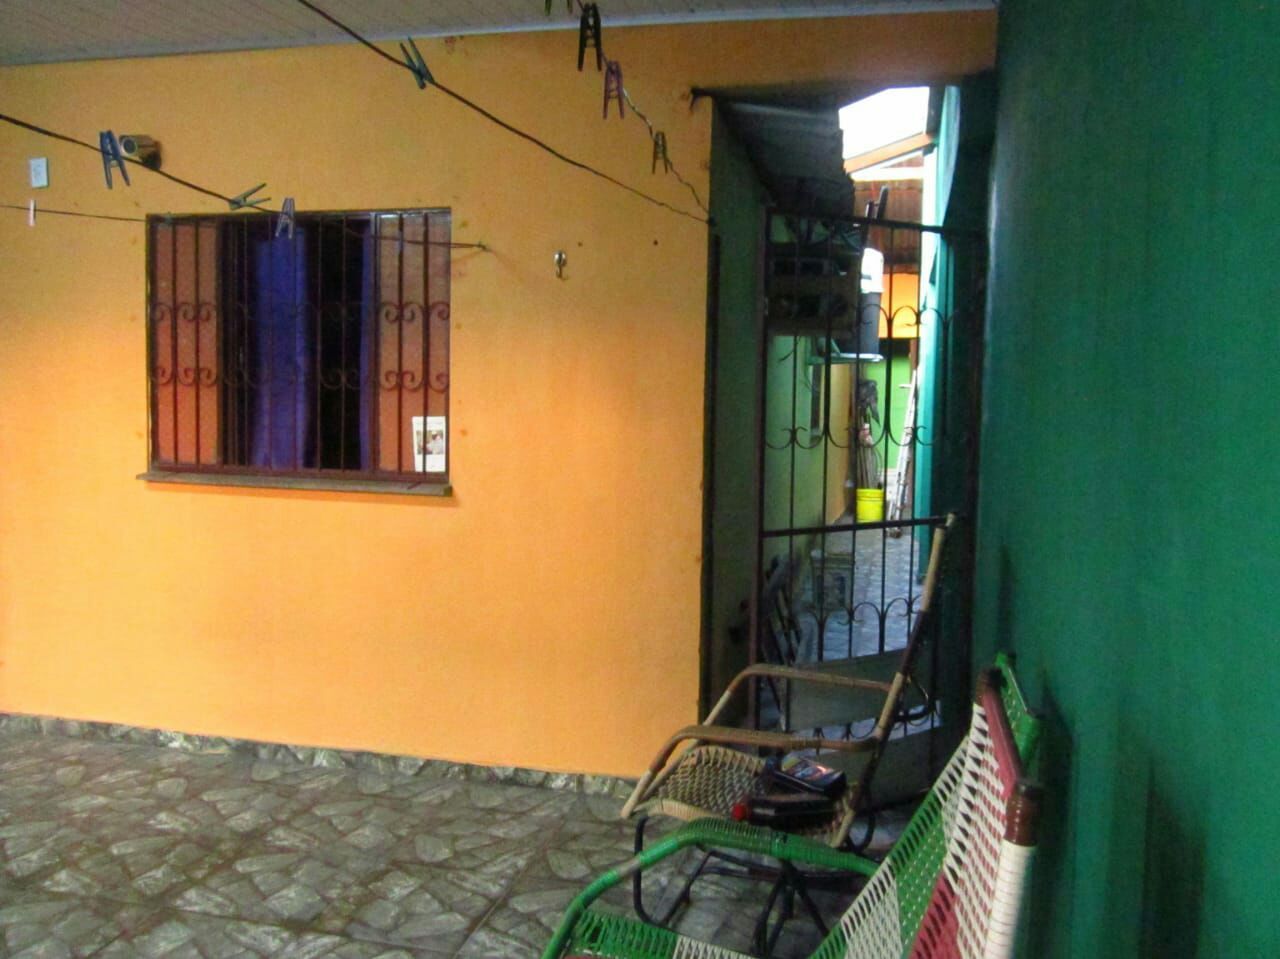 Casa com 3 dormitórios à venda, 128 m² por RS 220.000,00 - Cidade Nova - Manaus-AM